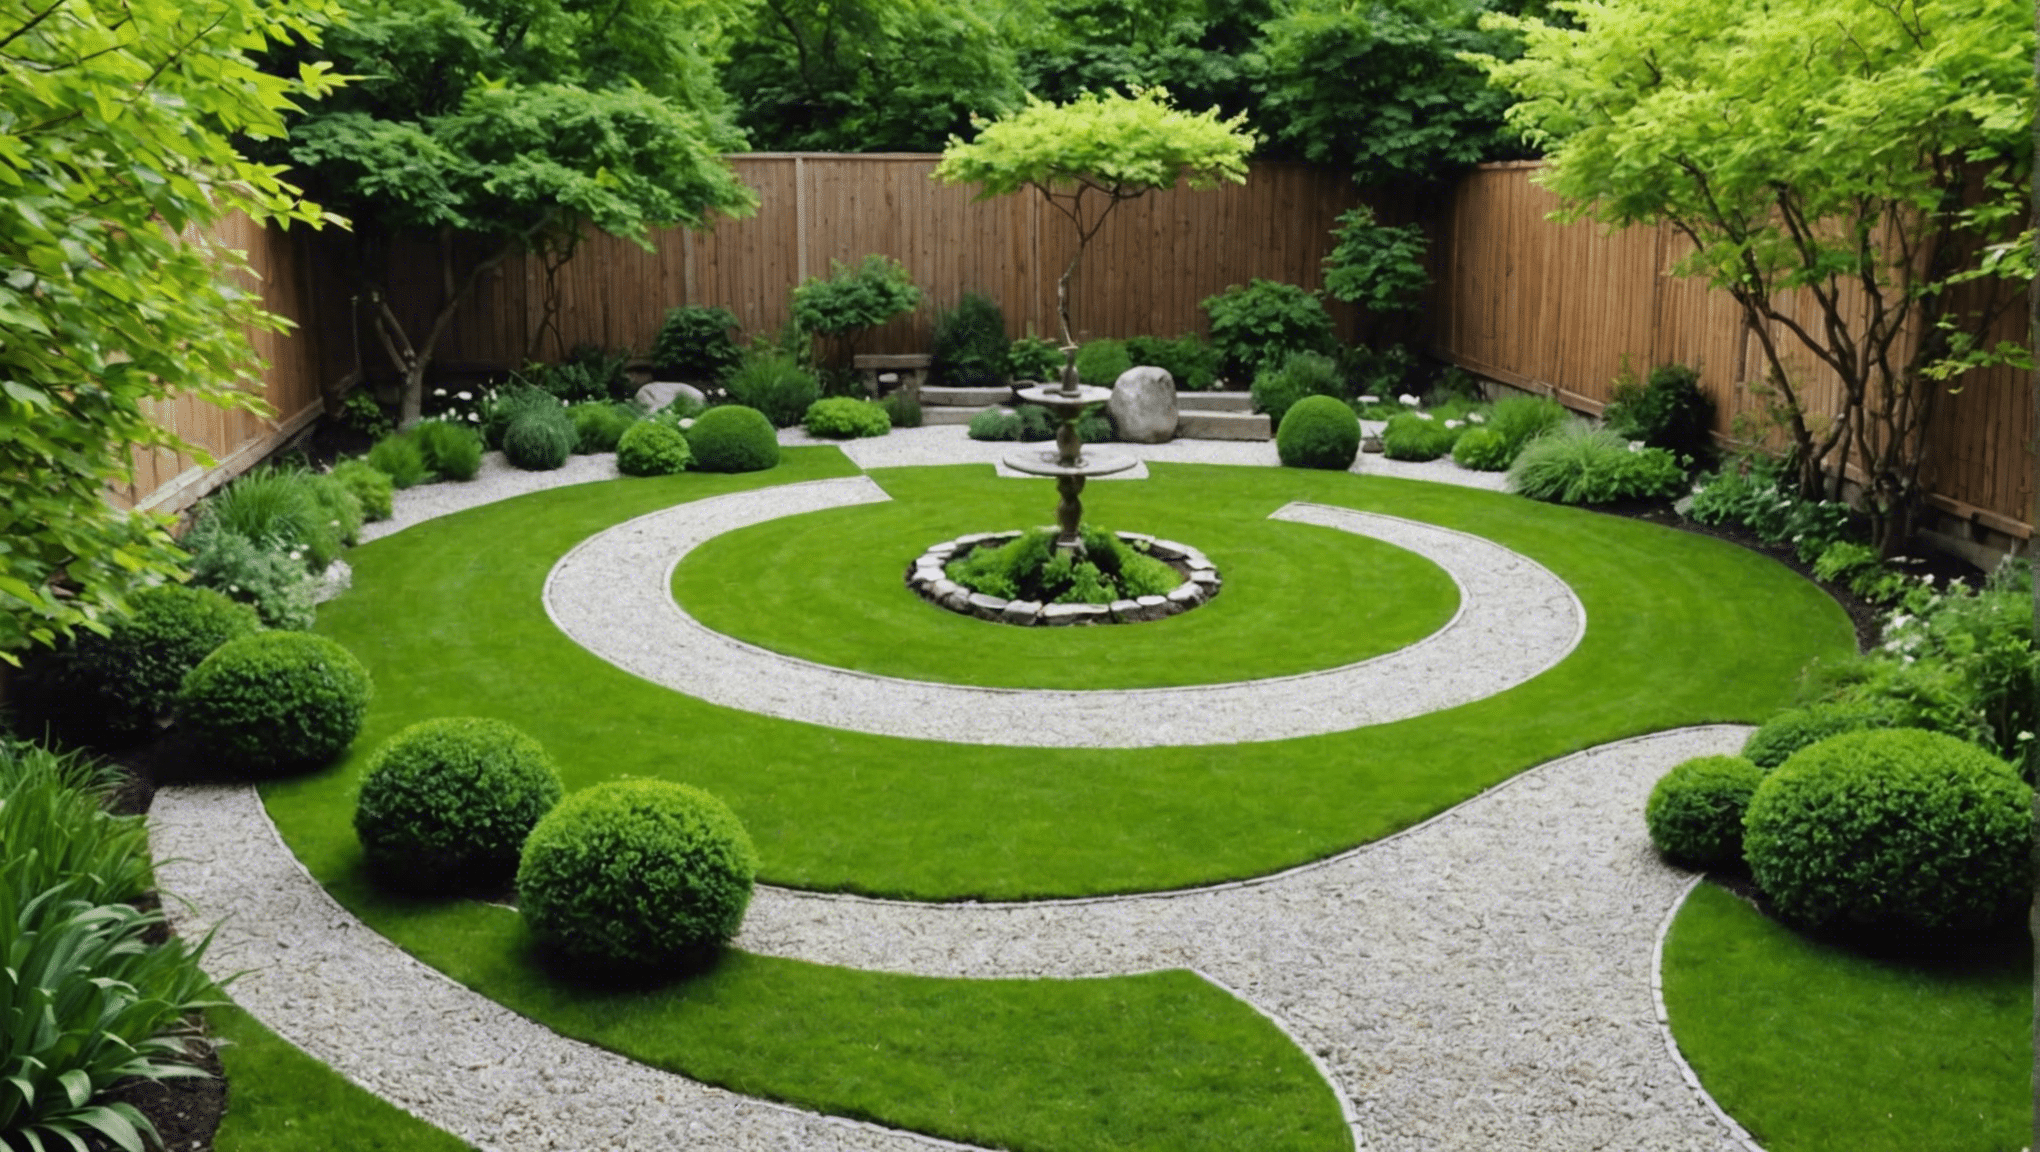 découvrez comment créer un petit jardin zen, des idées pour aménager un espace paisible et relaxant, conseils de plantes et de décoration pour une ambiance zen réussie.